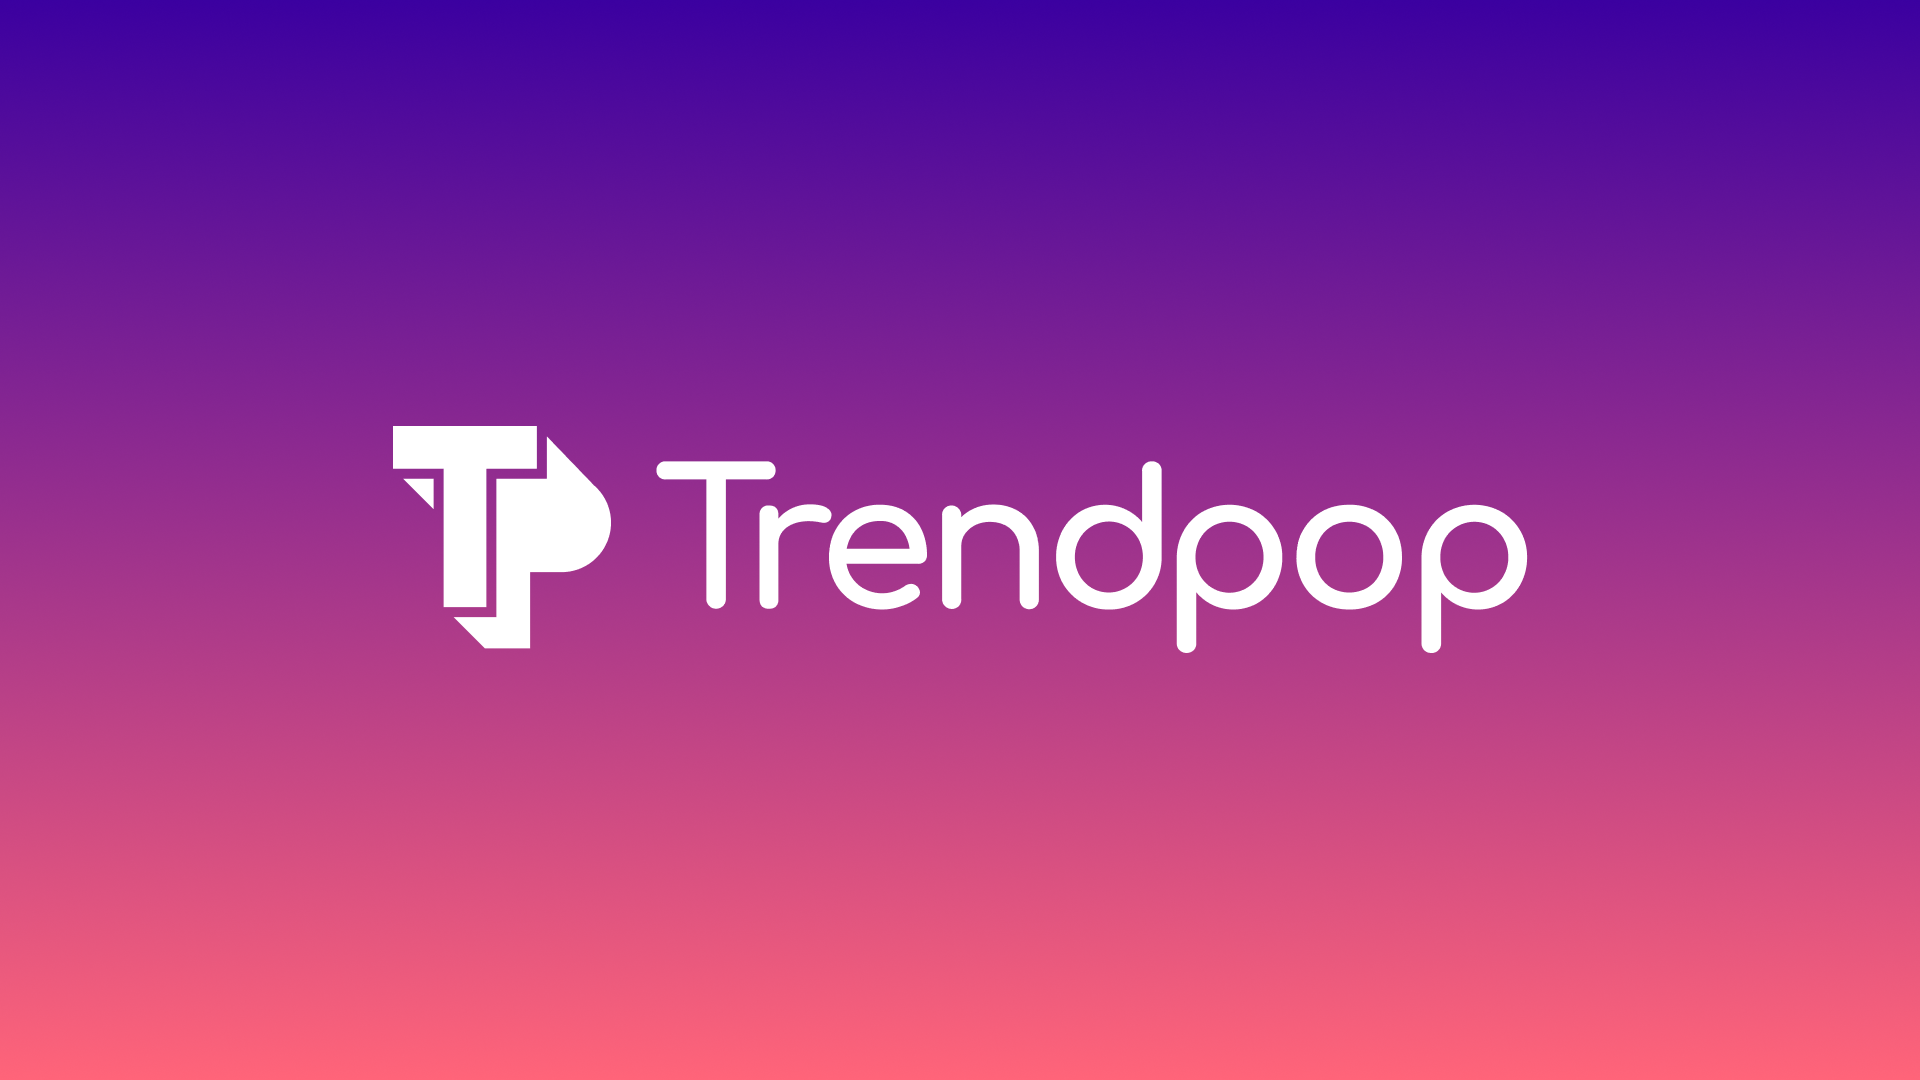 TrendPop's logo